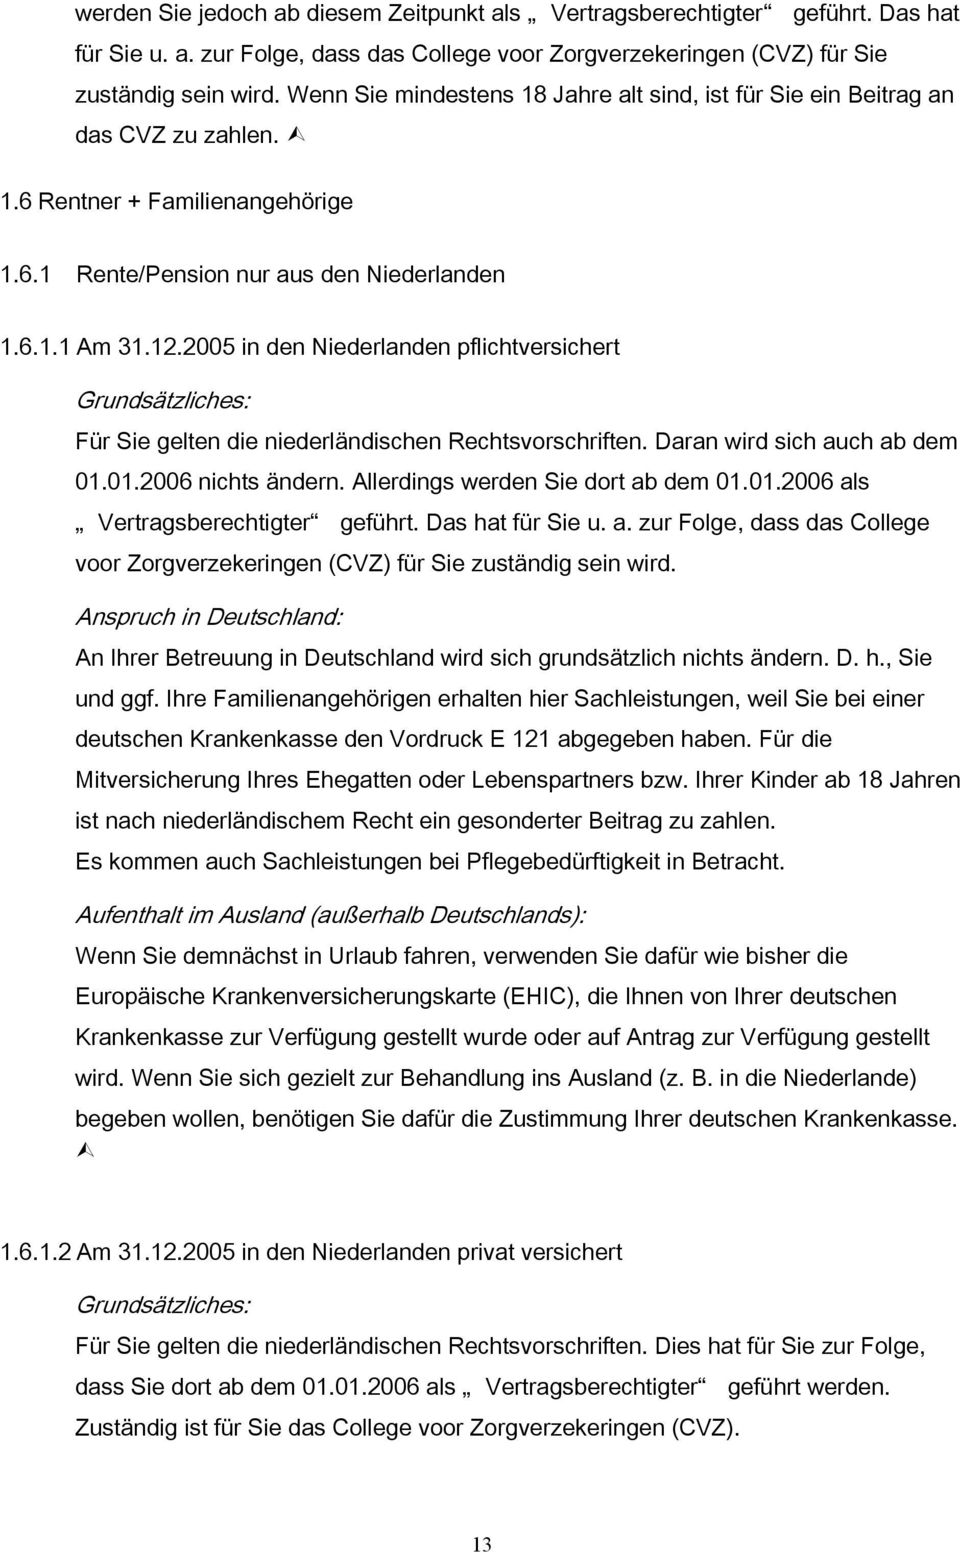 2005 in den Niederlanden pflichtversichert Für Sie gelten die niederländischen Rechtsvorschriften. Daran wird sich auch ab dem 01.01.2006 nichts ändern. Allerdings werden Sie dort ab dem 01.01.2006 als Vertragsberechtigter geführt.